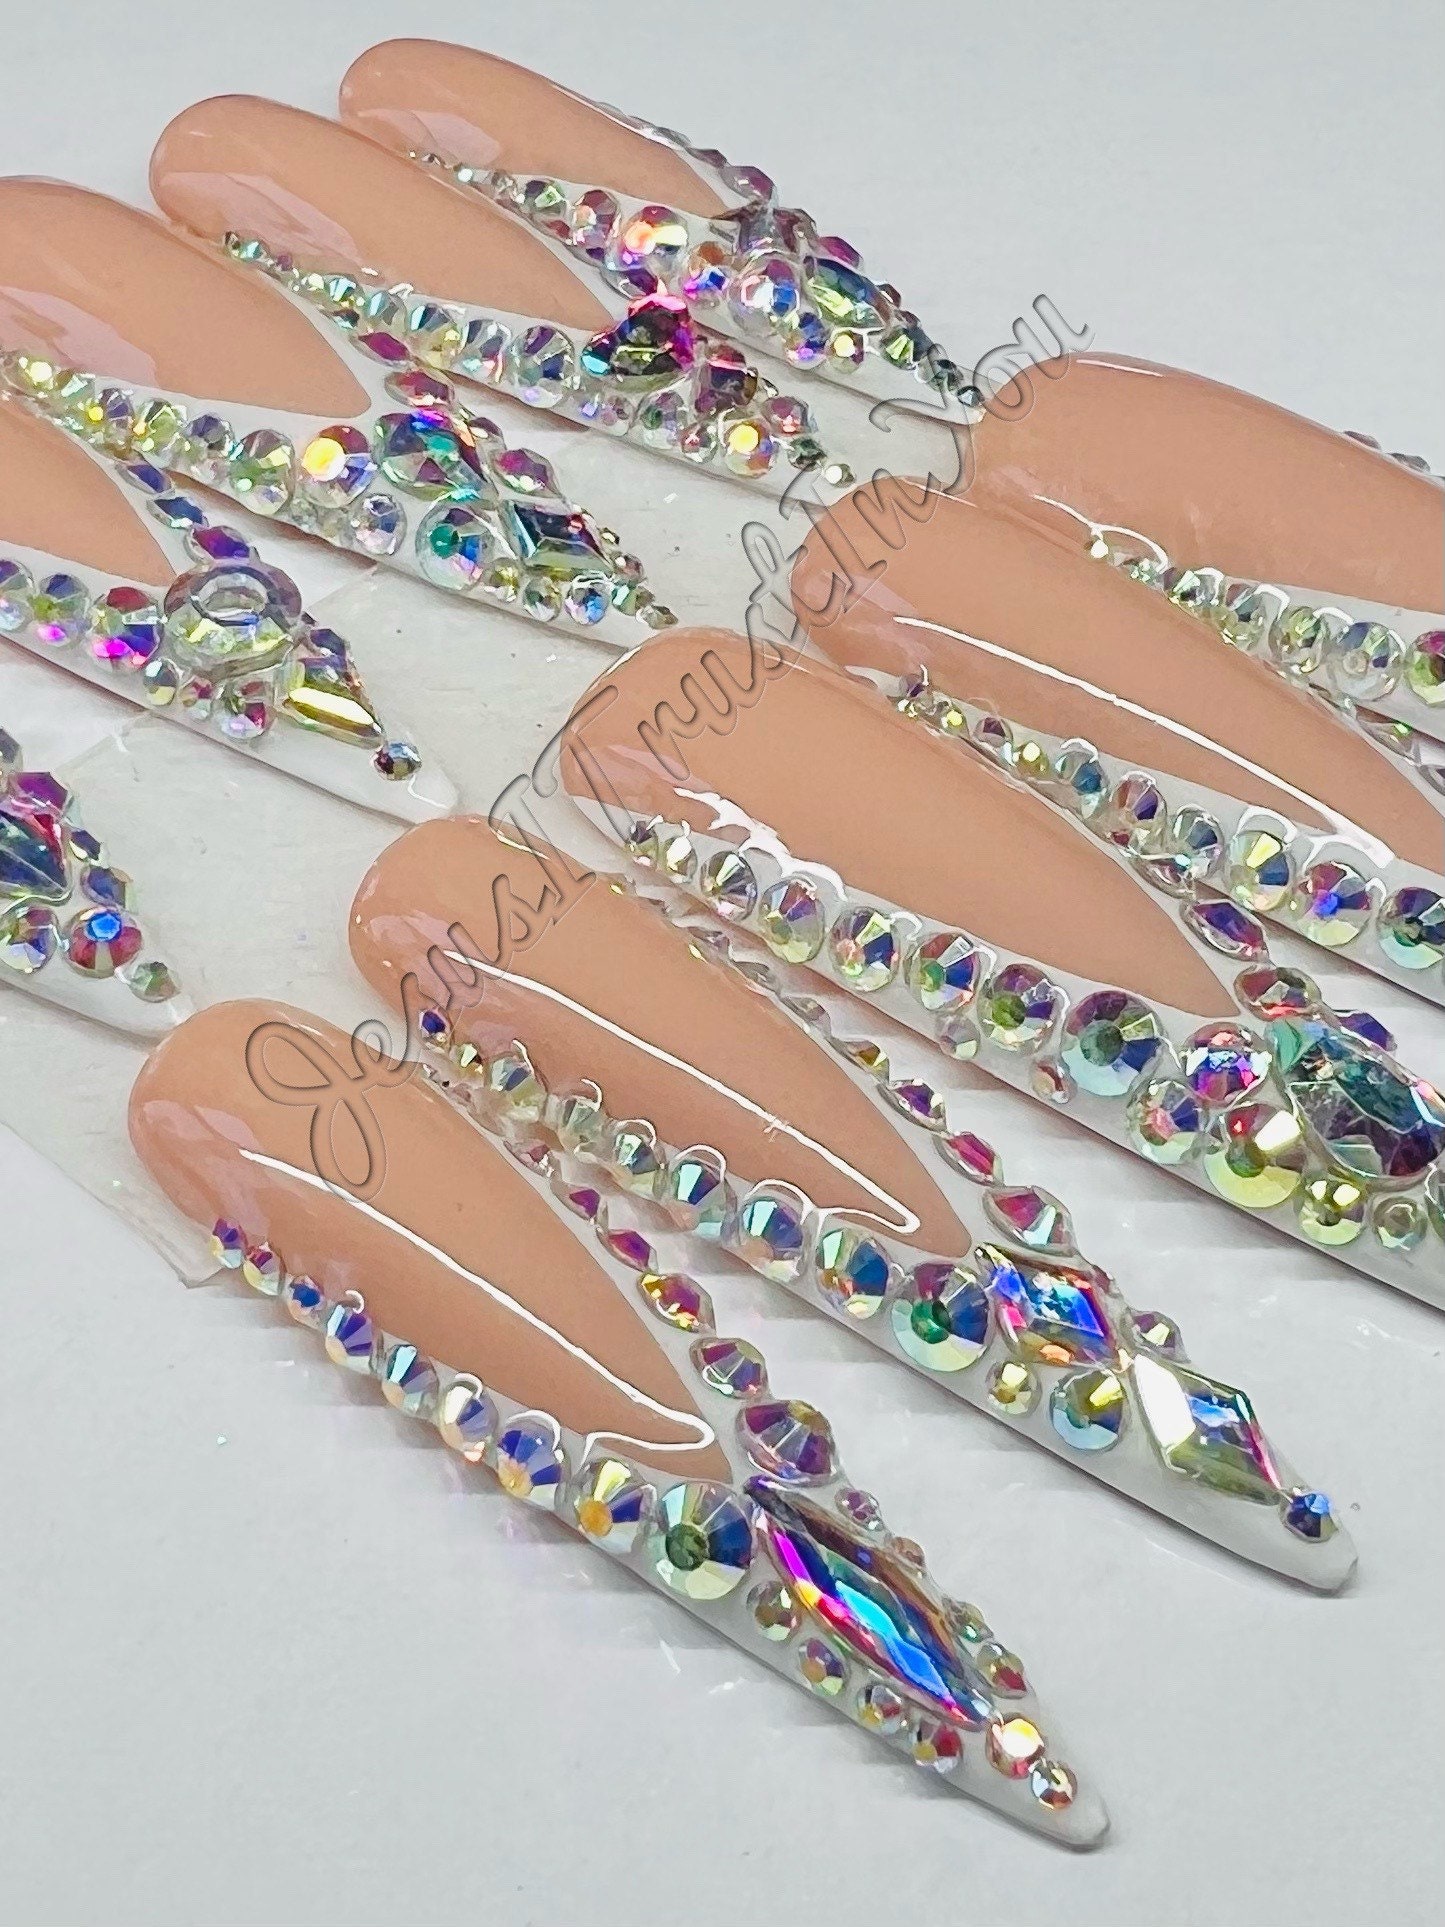 French Beauty - Xxxl Stiletto Gel Drücken Auf Nägeln| Wiederverwendbare Nägel | Lange Geschenke Für Sie| Strasssteine Makartt Dnd Kleber von Etsy - JesusItrustInYouCo